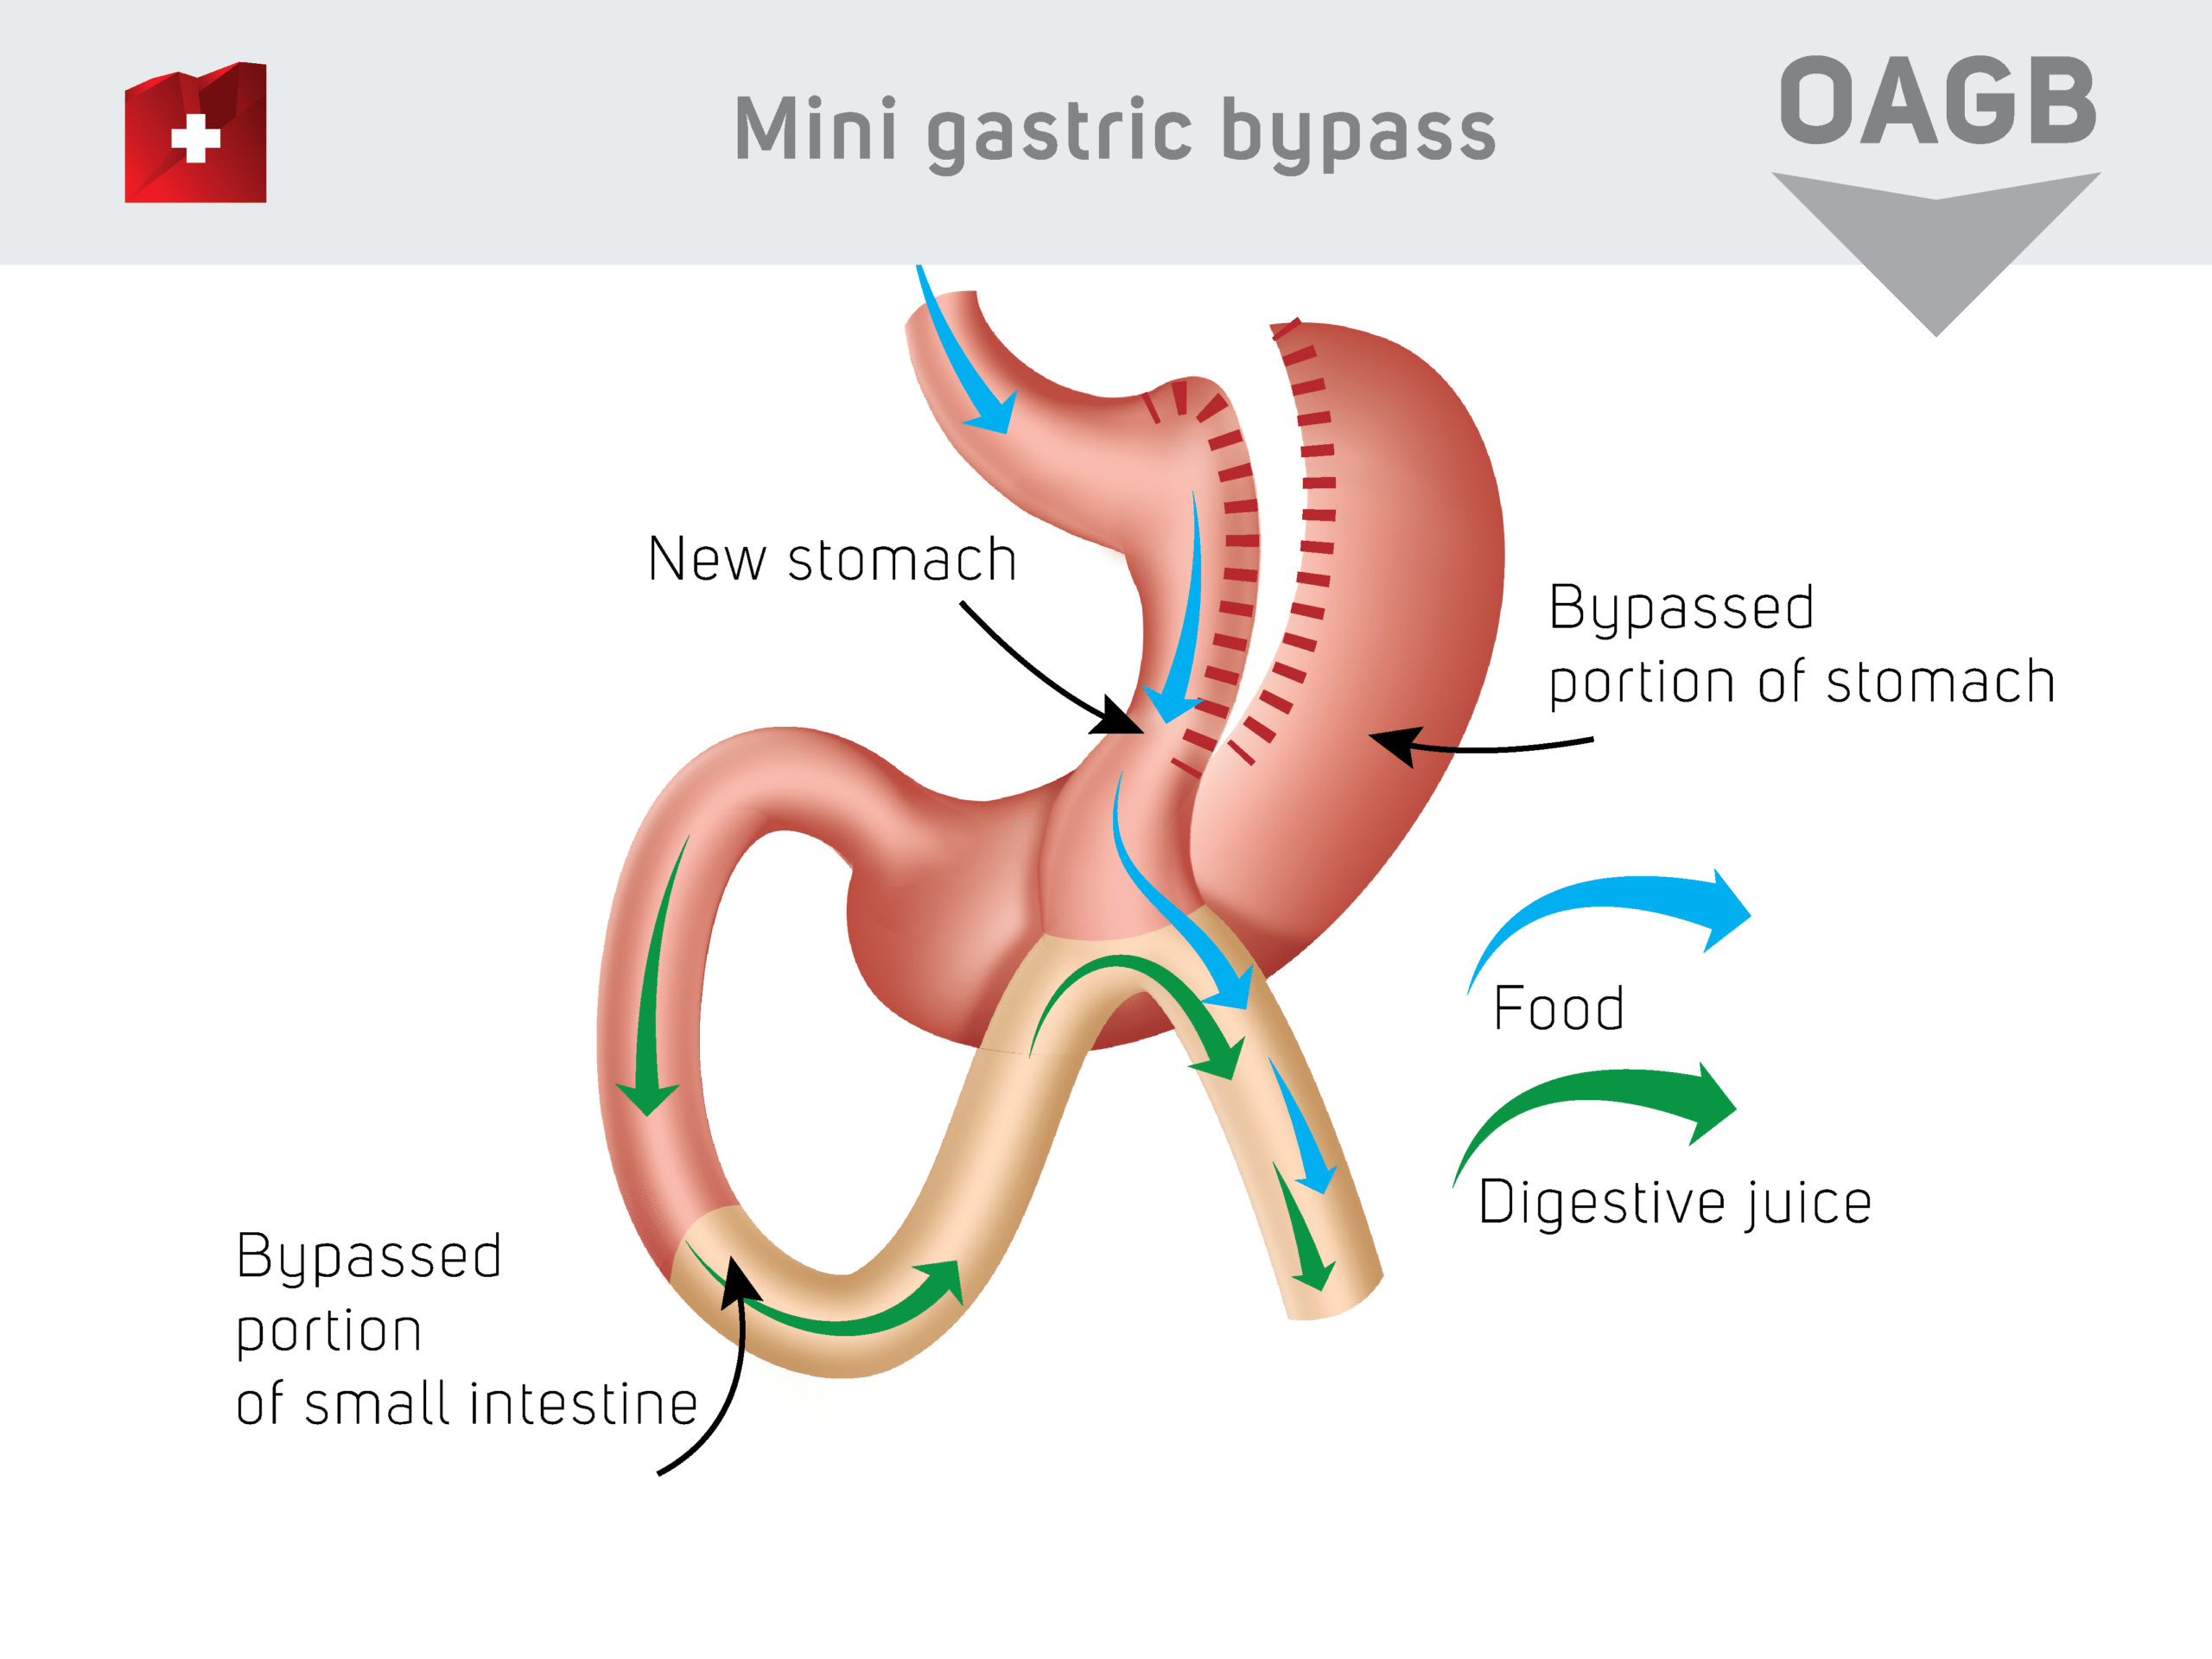 Mini gastric baypass - news stomach / baypassed portion of stomach / baypassed portion of small intestine